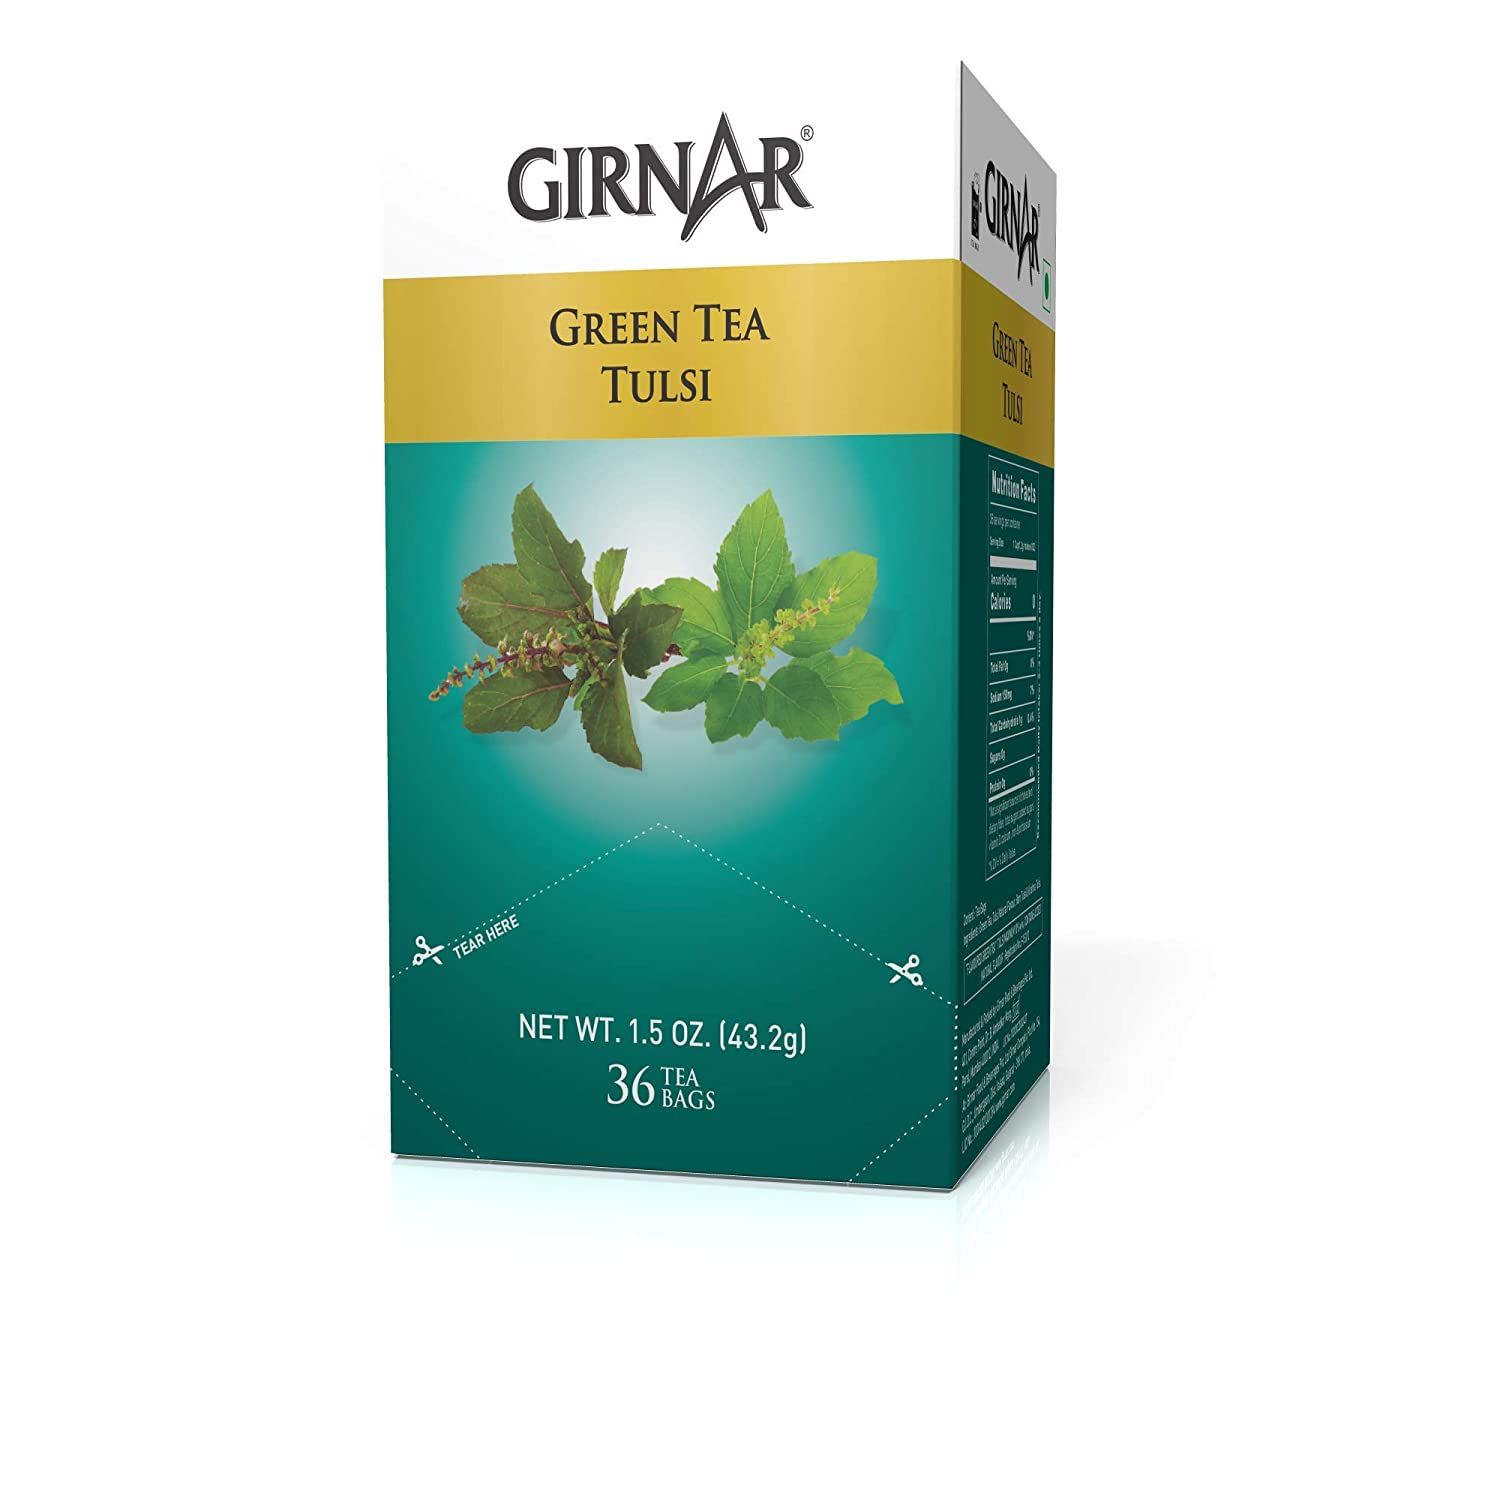 Girnar Green Tea With Tulsi Image